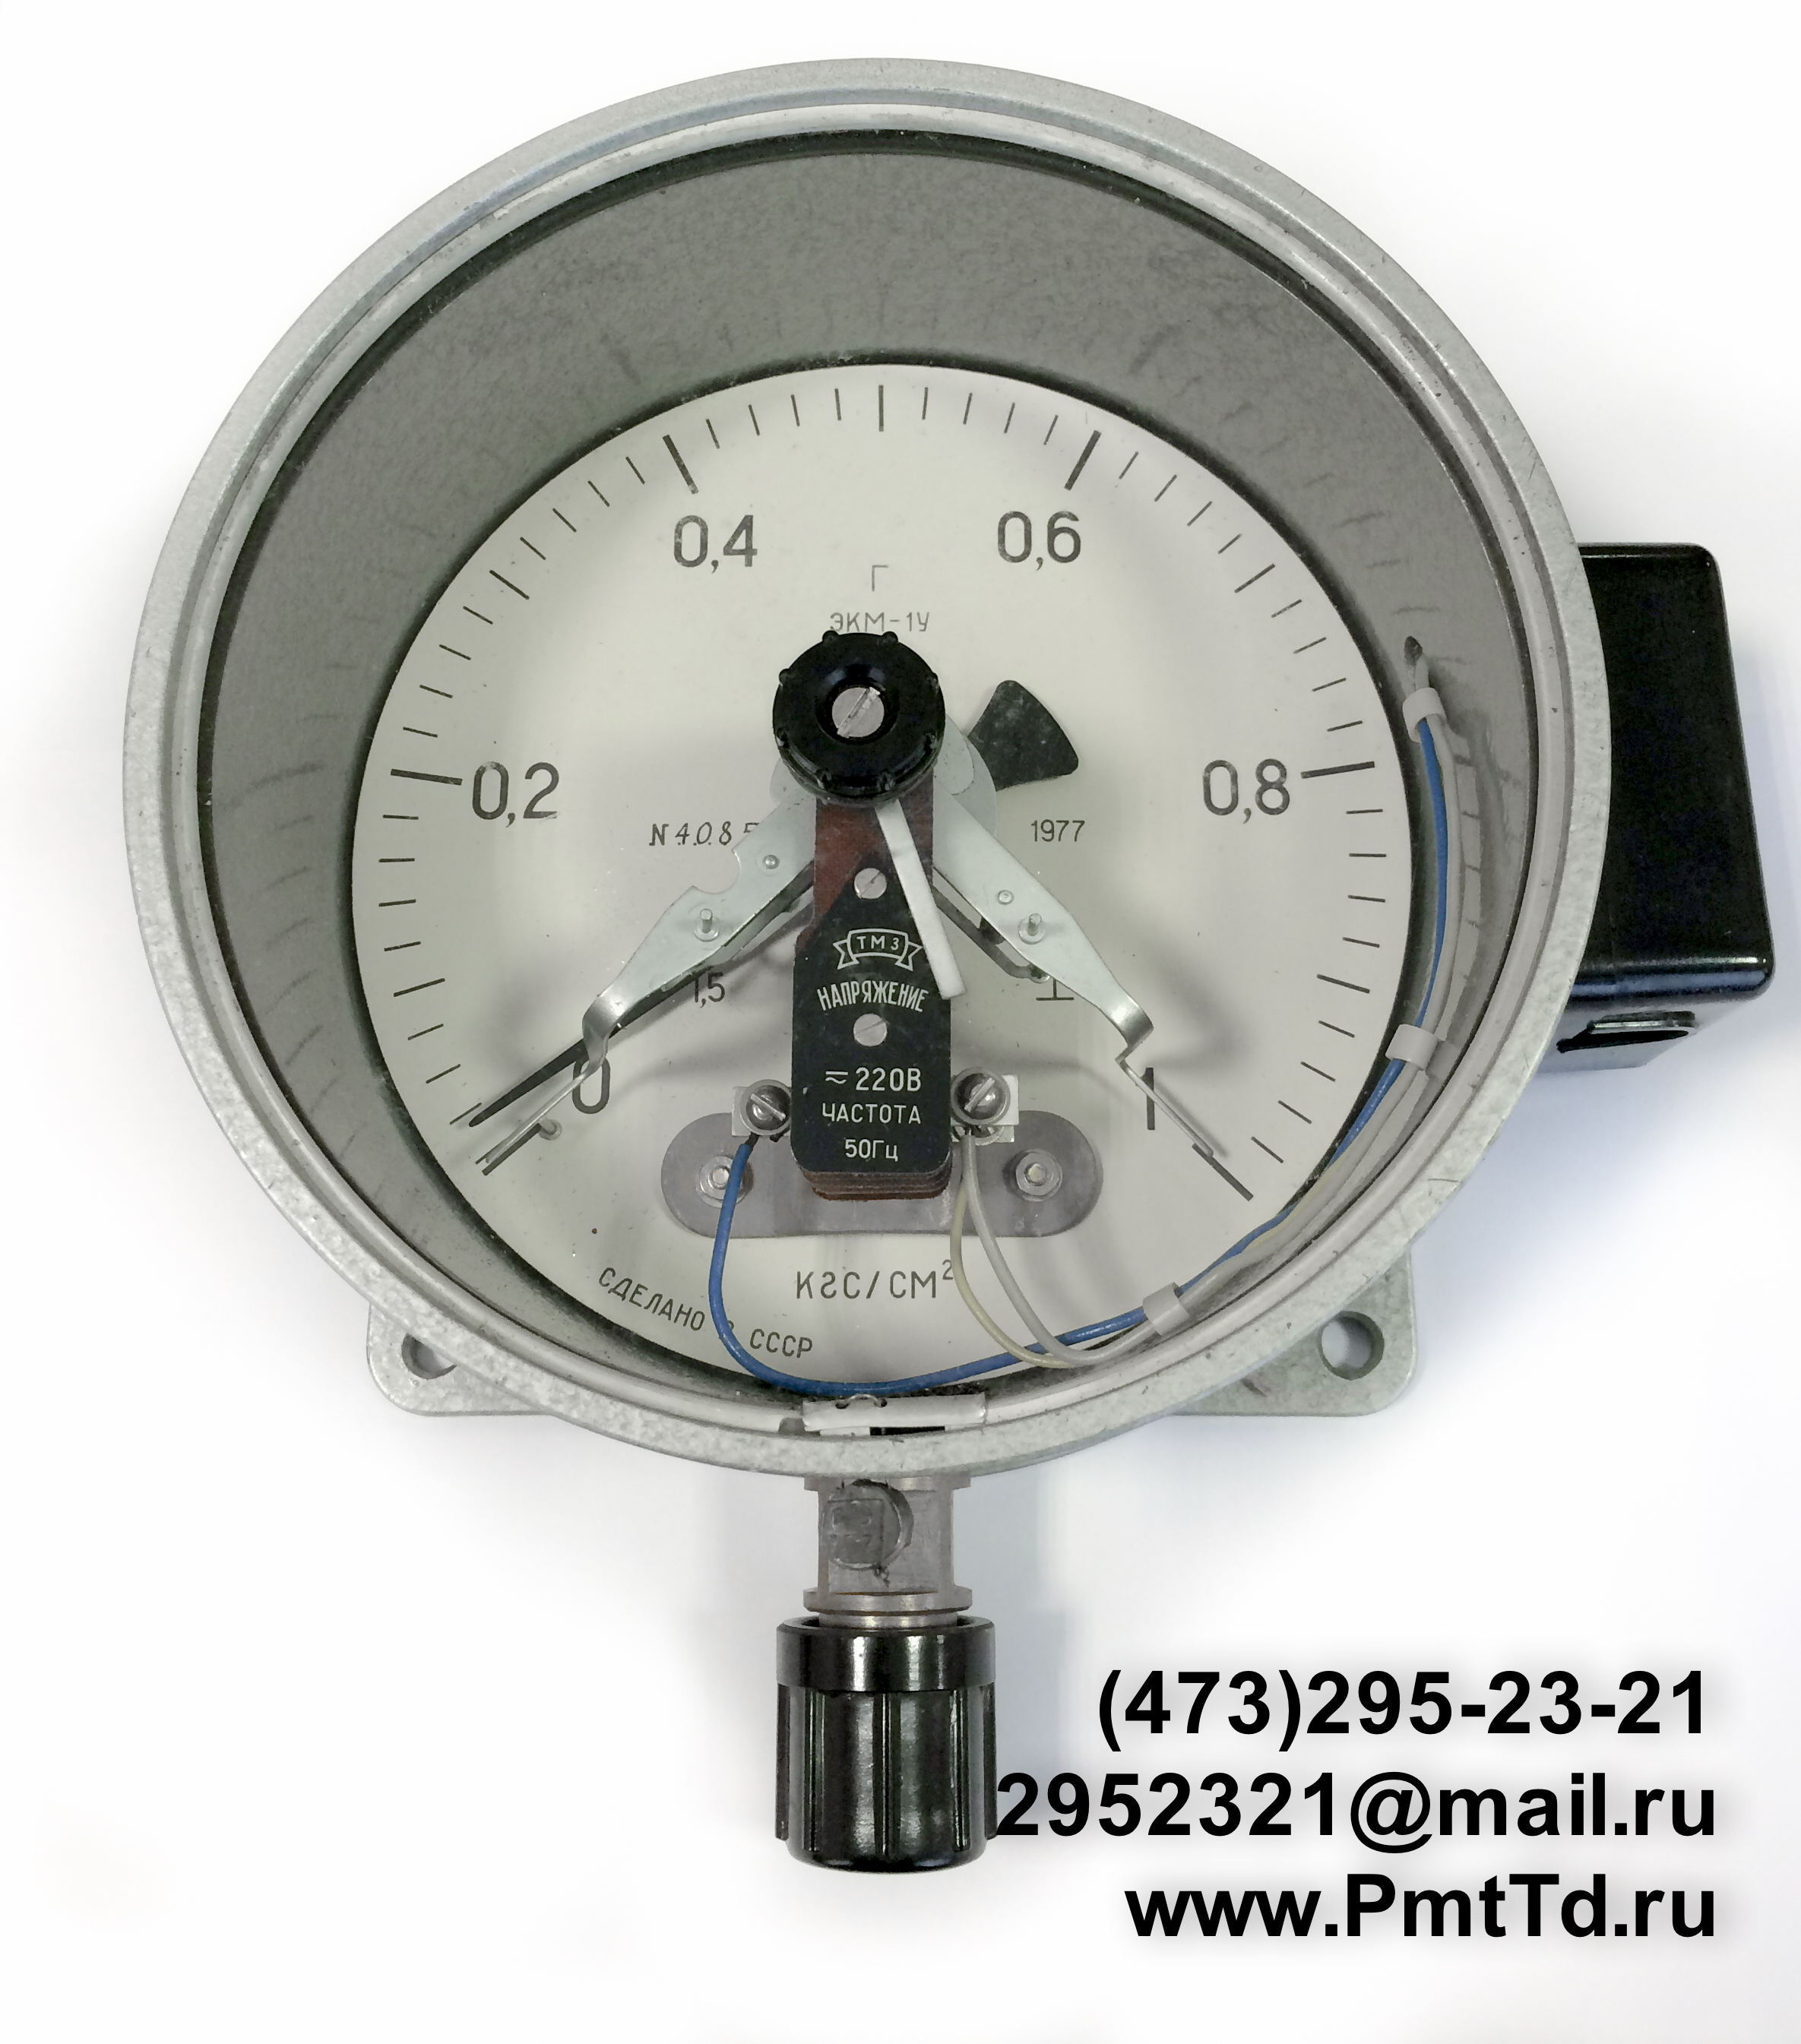 Электроконтактный манометр ЭКМ-1У 0-160 кгс/см2